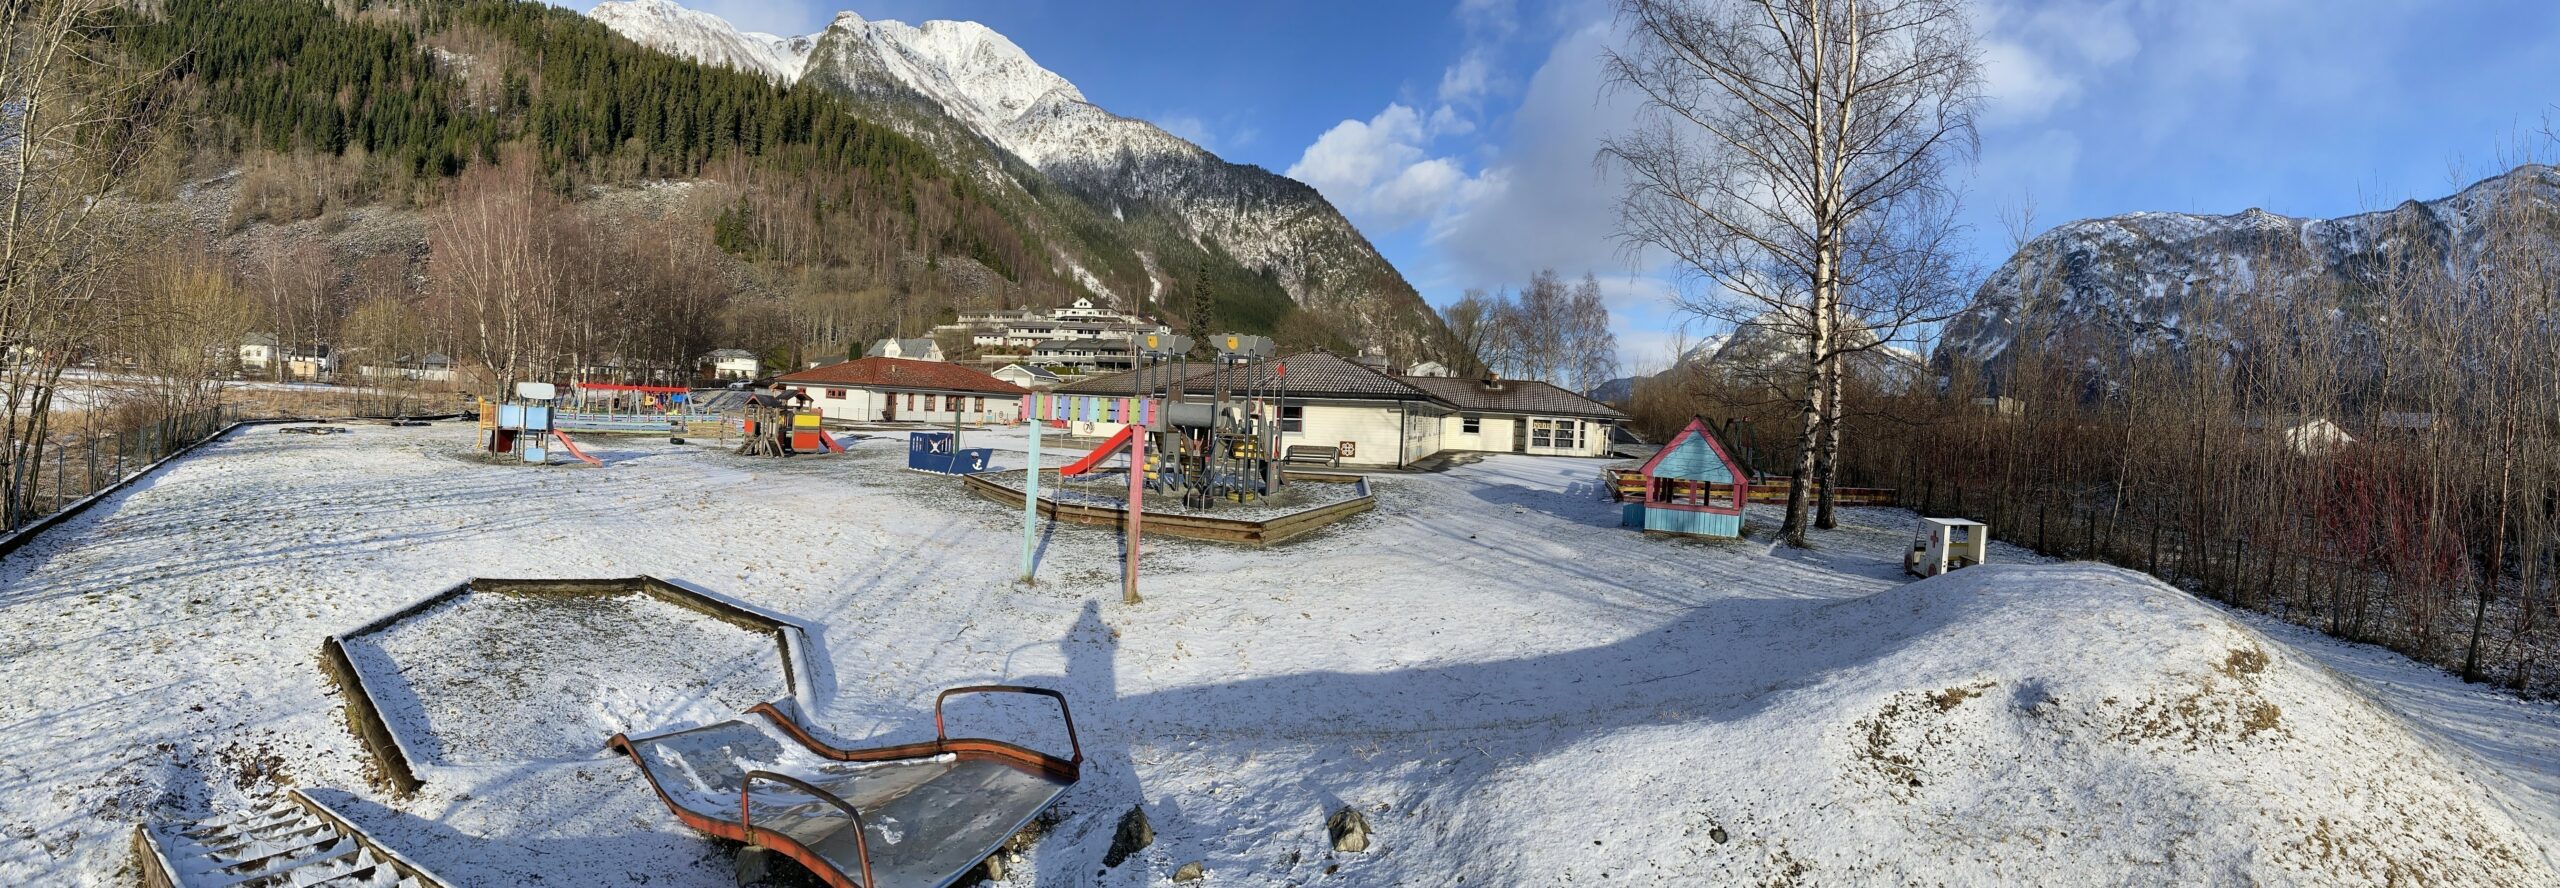 Eitrheimsvågen barnehage ein vinterdag med snødekt leikeområde med barnehagen i bakgrunn. Bilete.